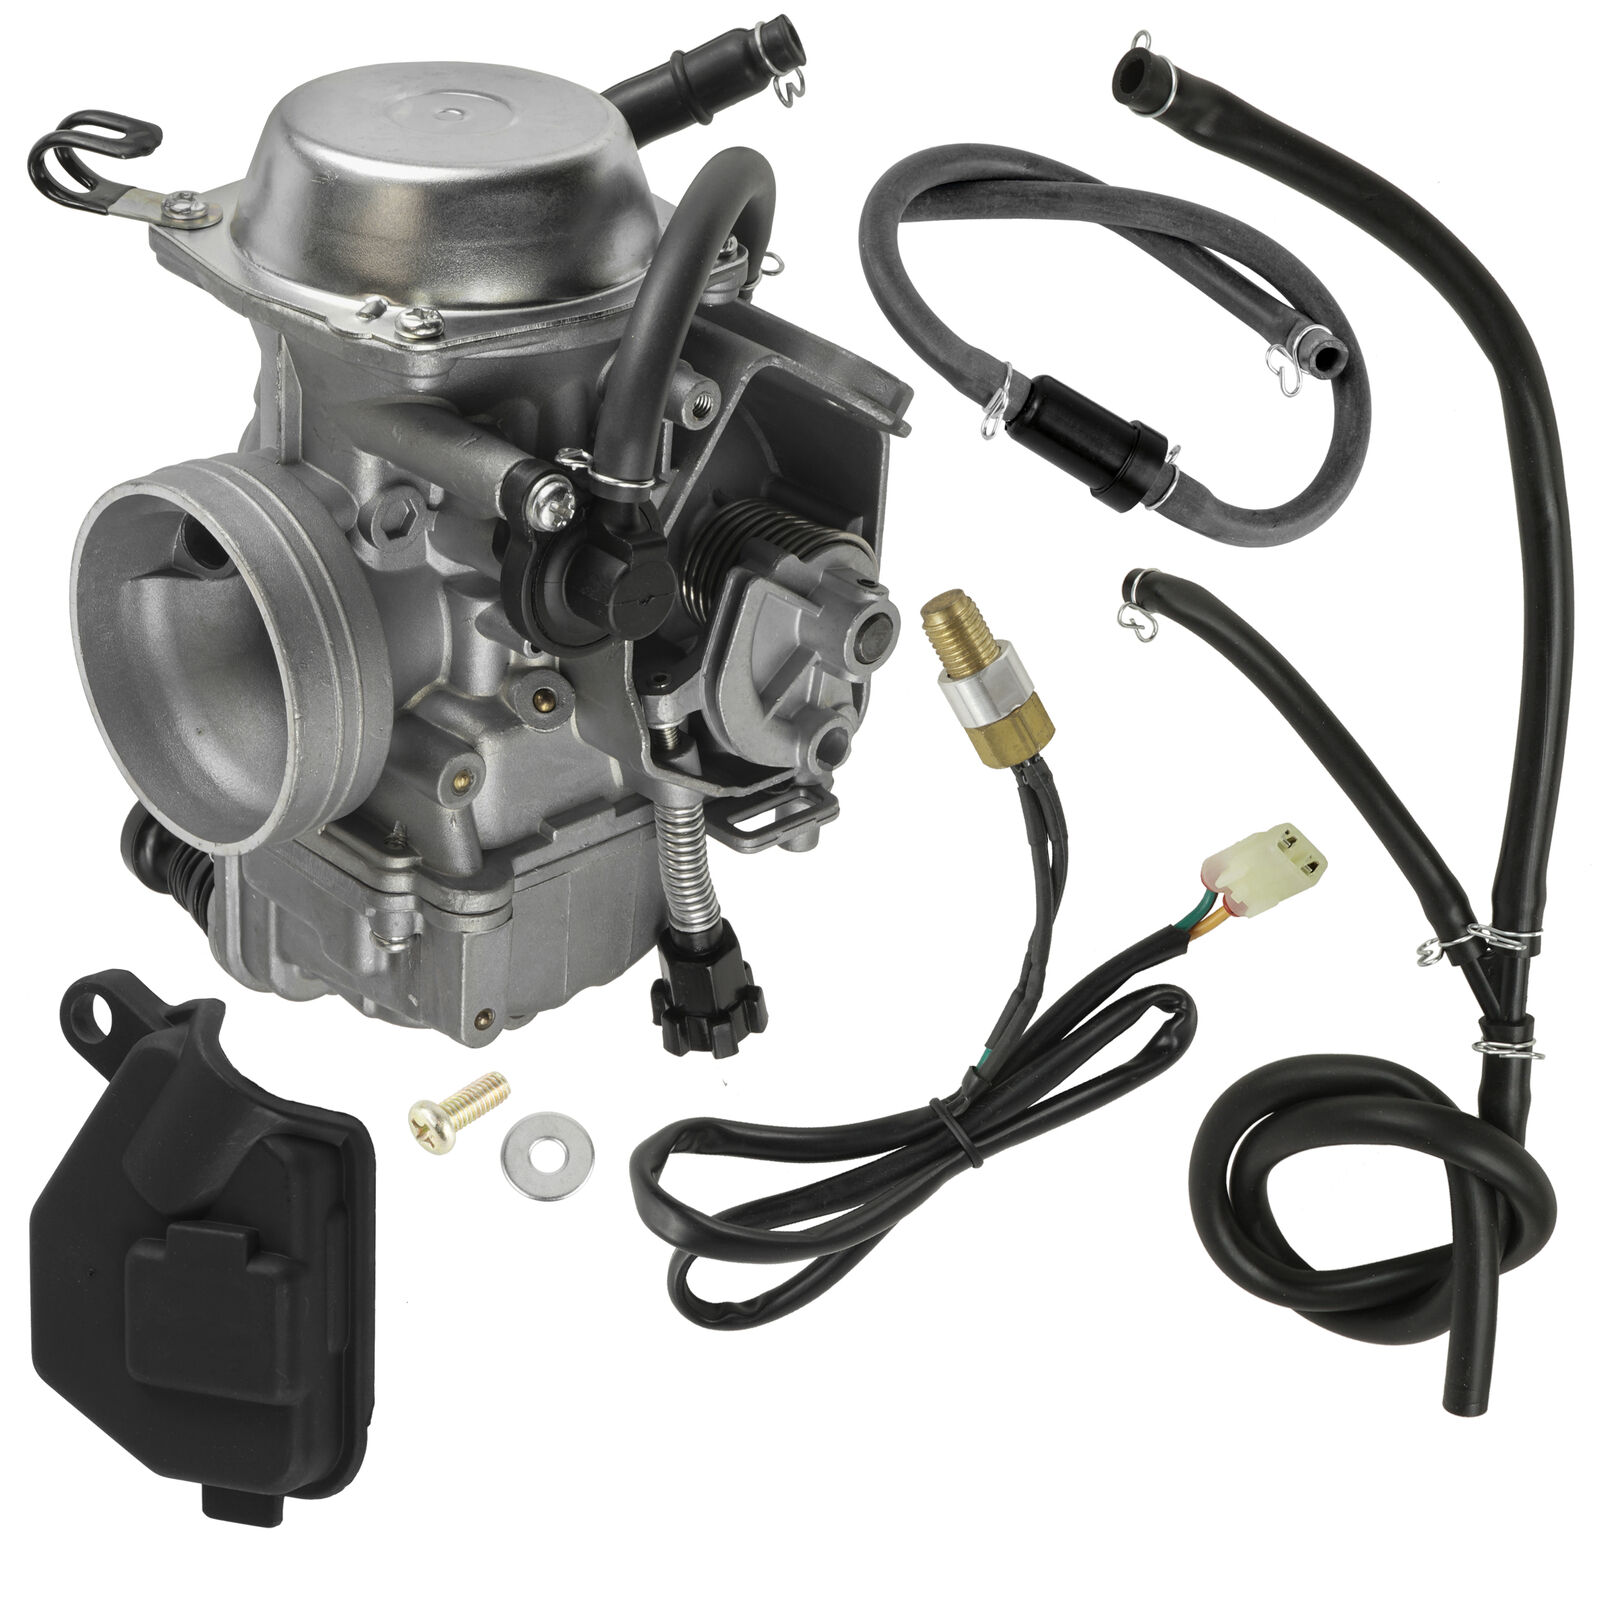 Carburetor for Honda TRX350 Rancher 350 2000-2003 New Carb 32mm